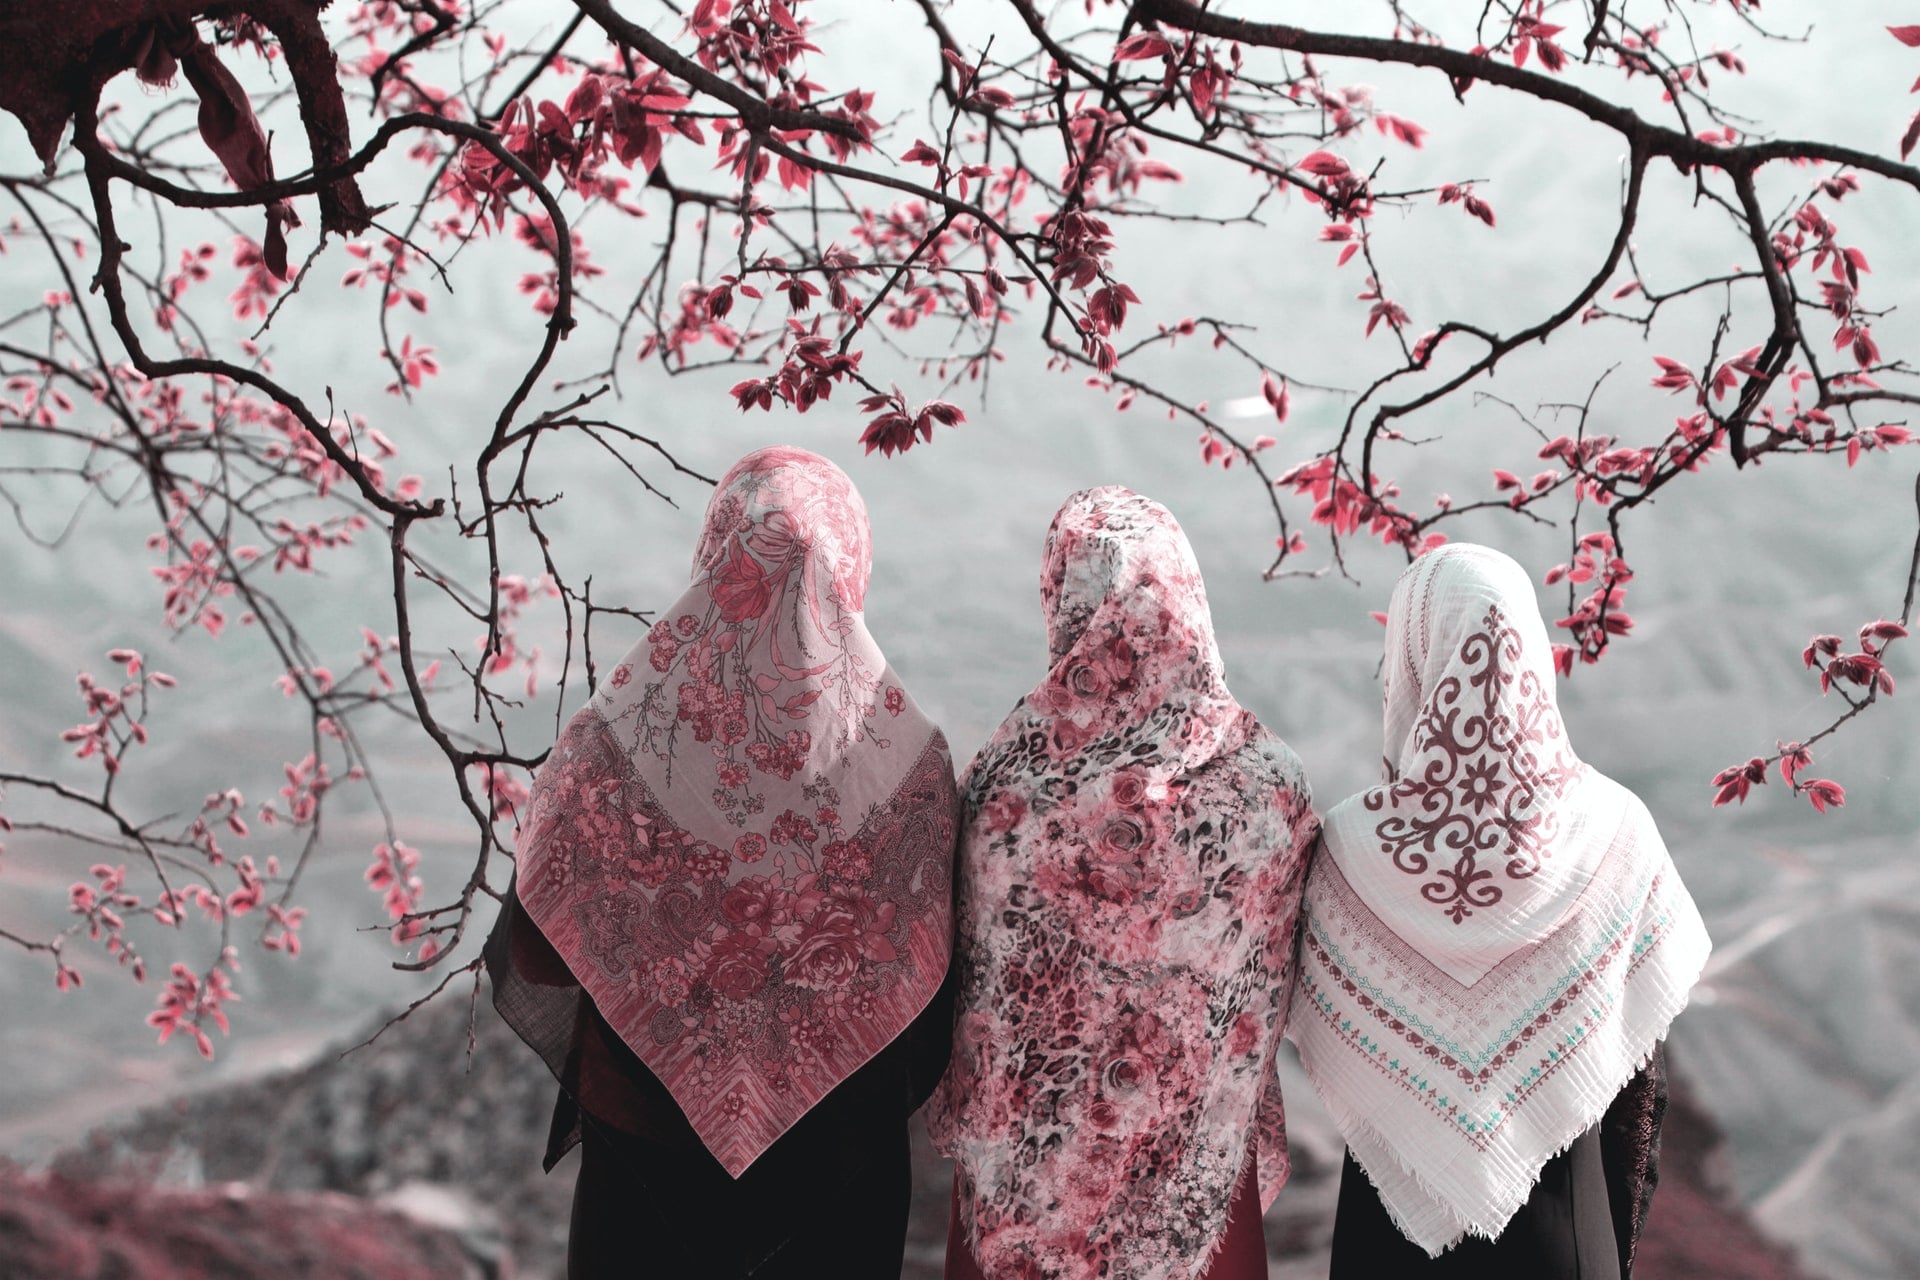 Three Iranian women at the Tomb of Khaled in Nabi, Iran